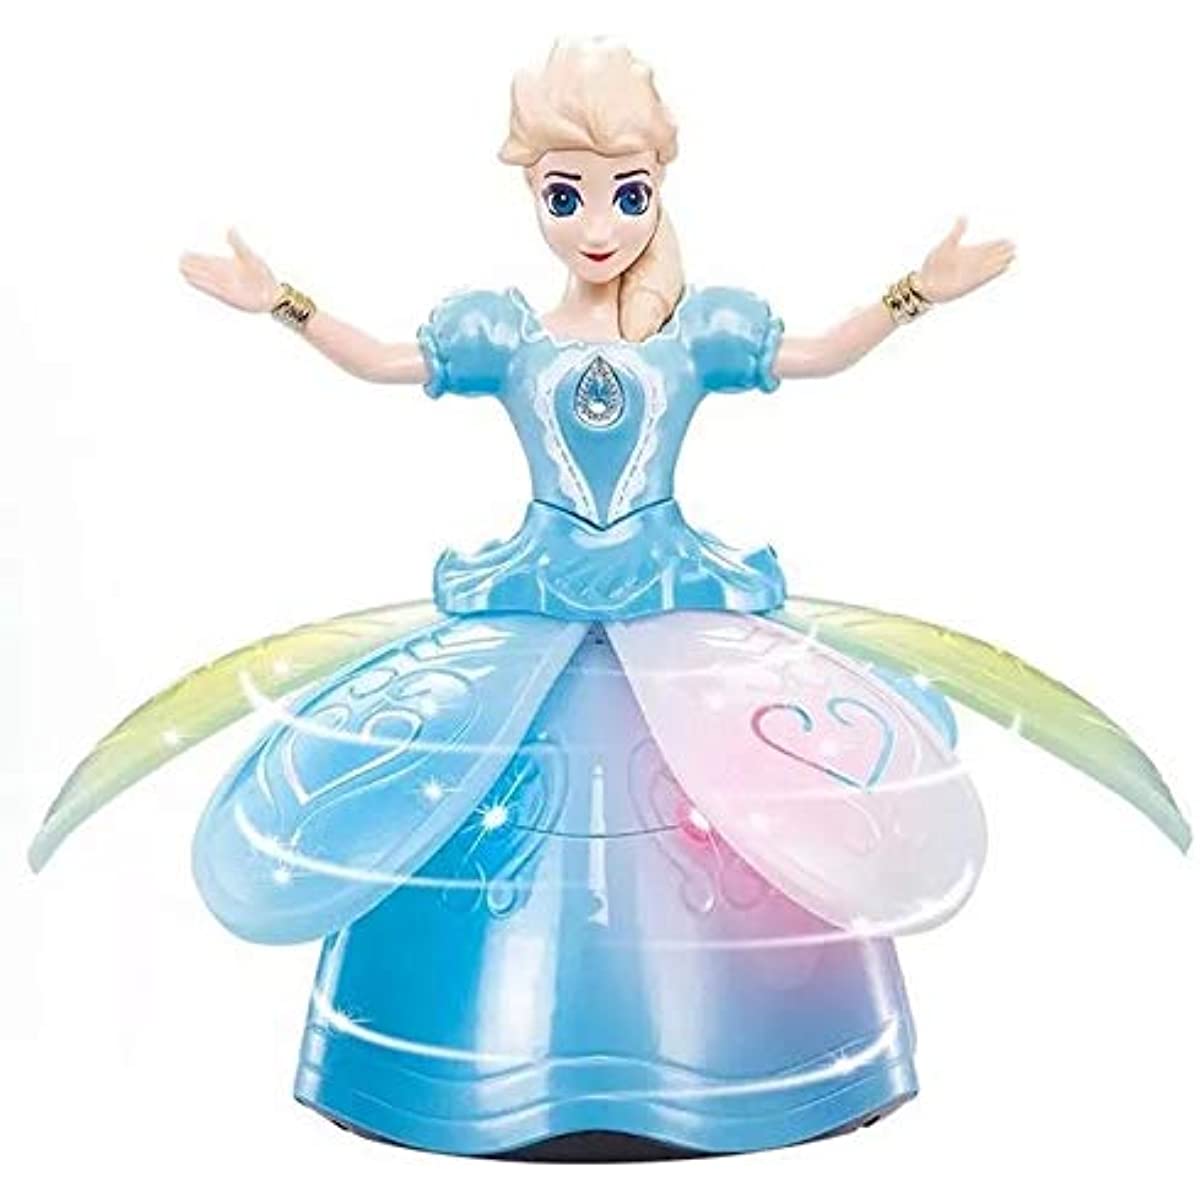 Pille çalışan prenses bebek oyuncakları kızlar için oyuncaklar kar dansı dans bebekleri yanıp sönen şarkı ve dönen